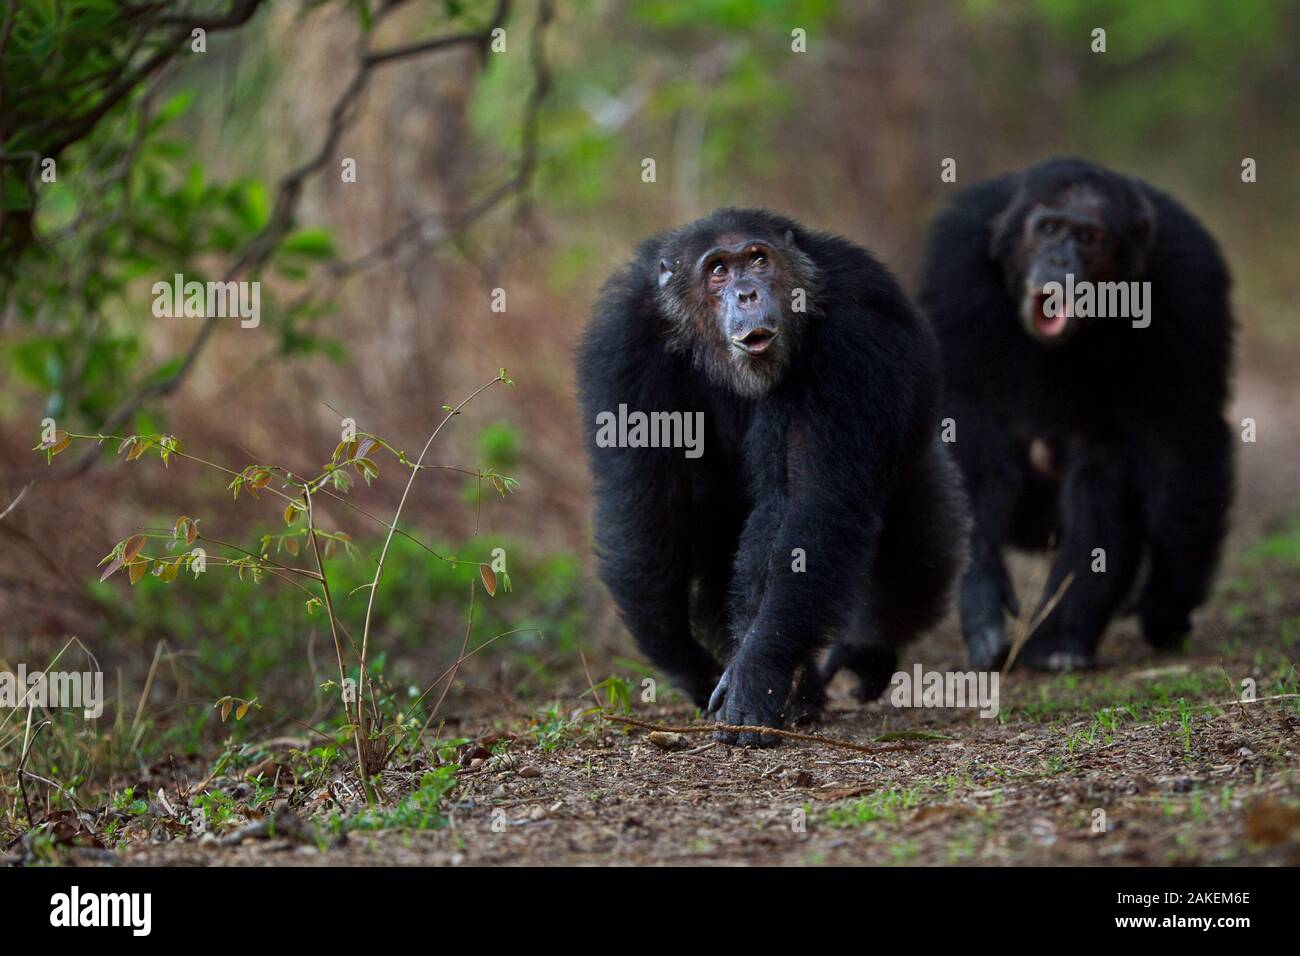 L'Est de chimpanzé (Pan troglodytes) schweinfurtheii "mâles âgés de 24 ans Faustino' et 'Titan' âgés de 19 ans walking.Parc National de Gombe, en Tanzanie. Banque D'Images